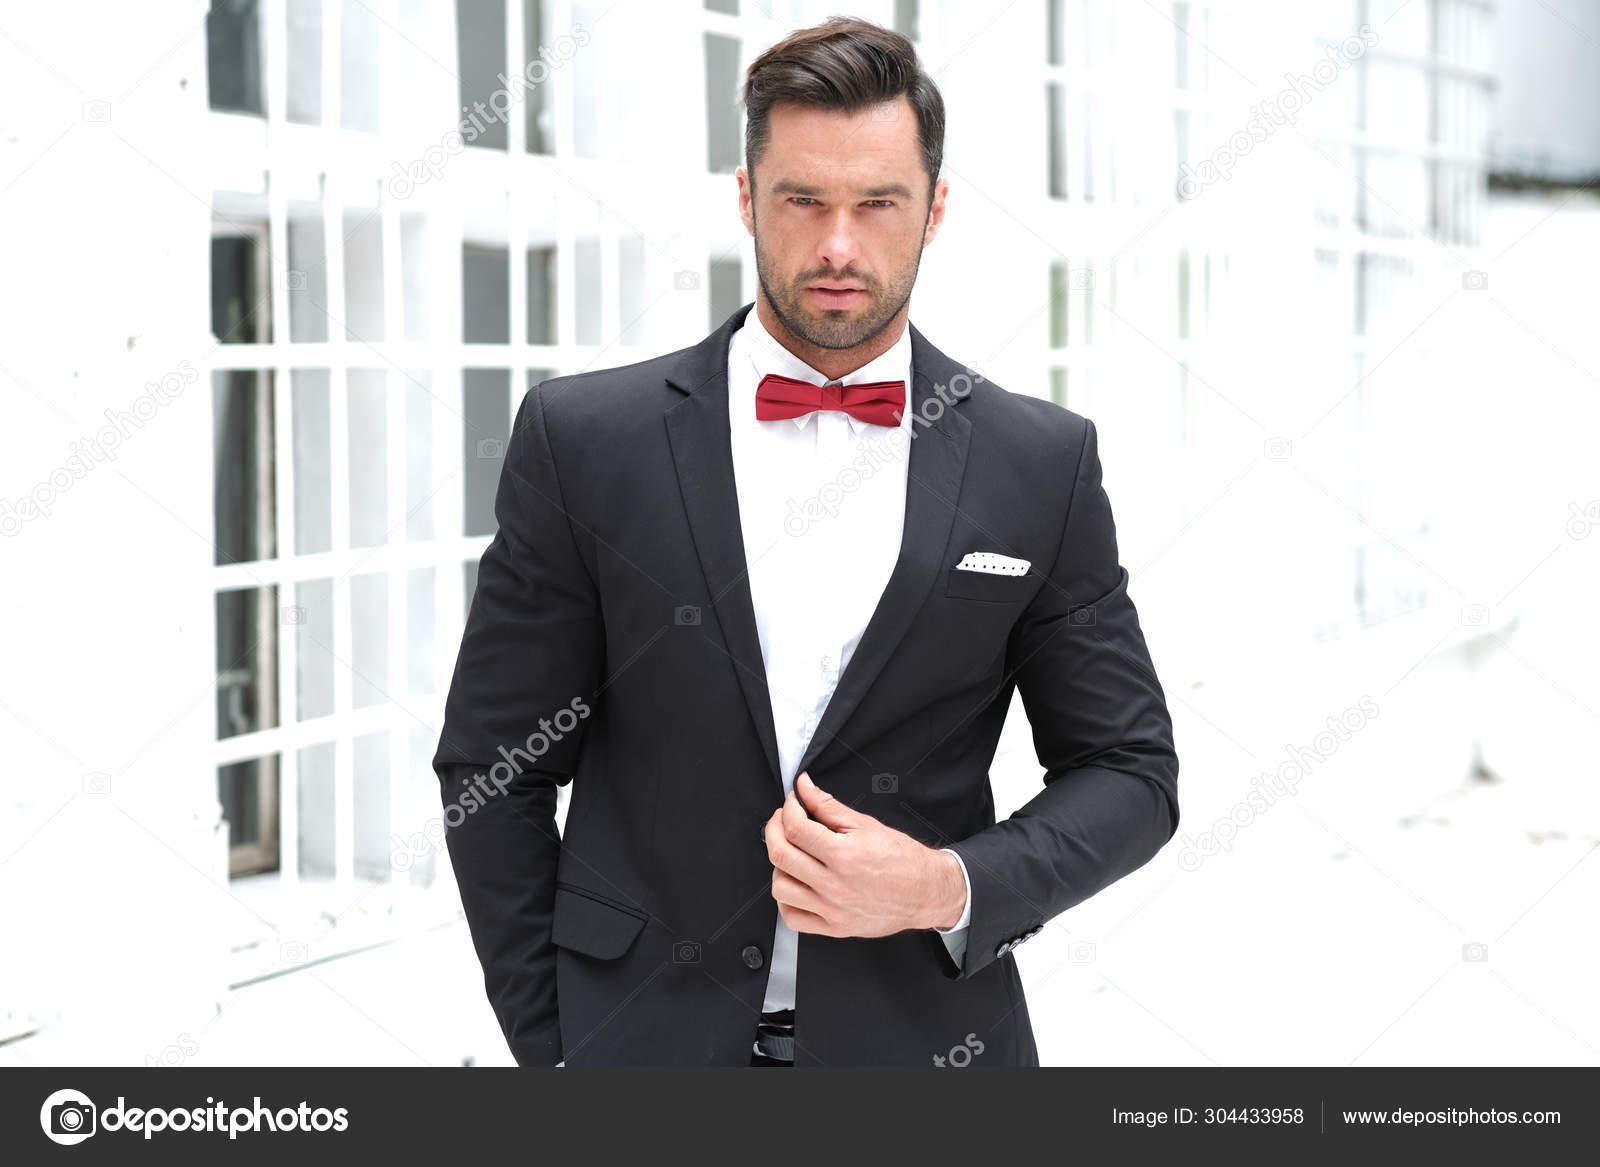 Tuxedo Với Cà Vạt Đỏ: Phong Cách Lịch Lãm Và Sang Trọng